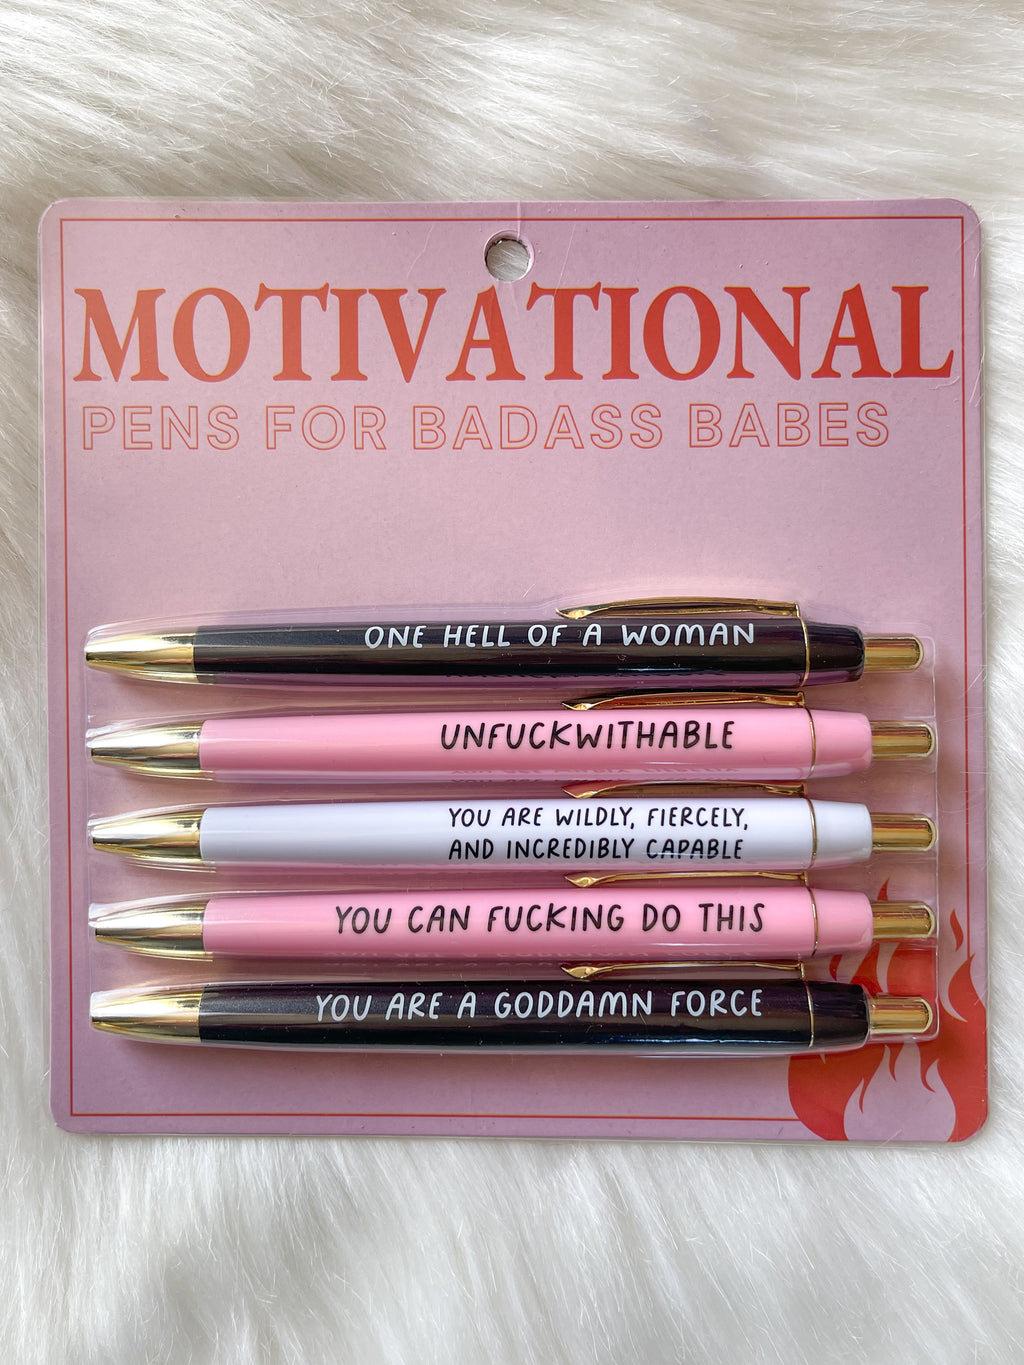 Mementofor Motivational Badass Pen Set, Funny Pens Swear Word Daily Pen Set  for Women, Motivational Pens For Badass Babes, Inspirational Pens Funny